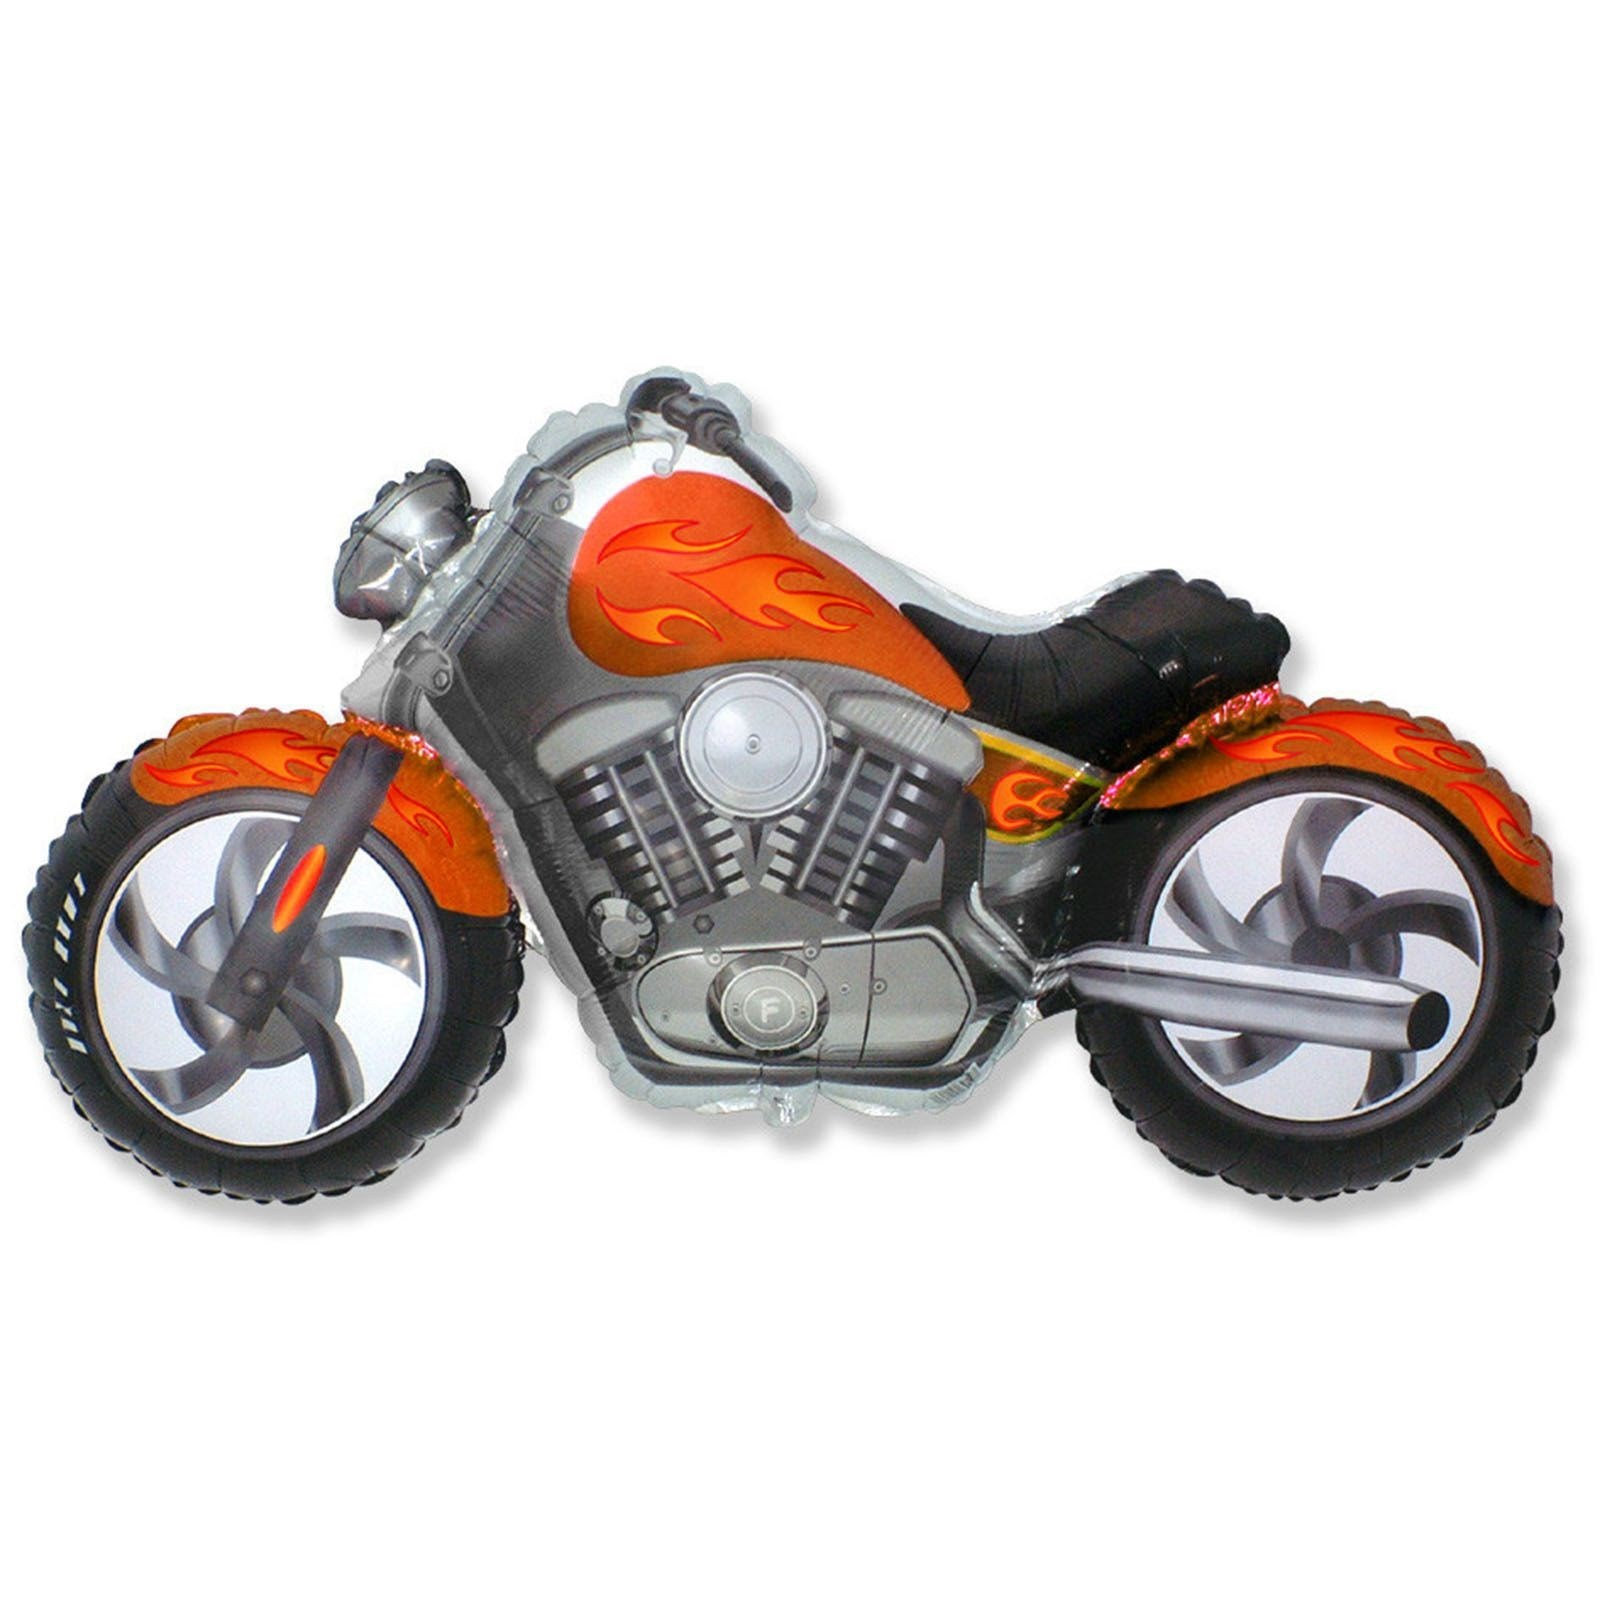 Флекс металл. Шар 1207-1637 мотоцикл. Шар мотоцикл Флекс. Мотоцикл шар Флексметалл. Мотоцикл синий Флексметалл.